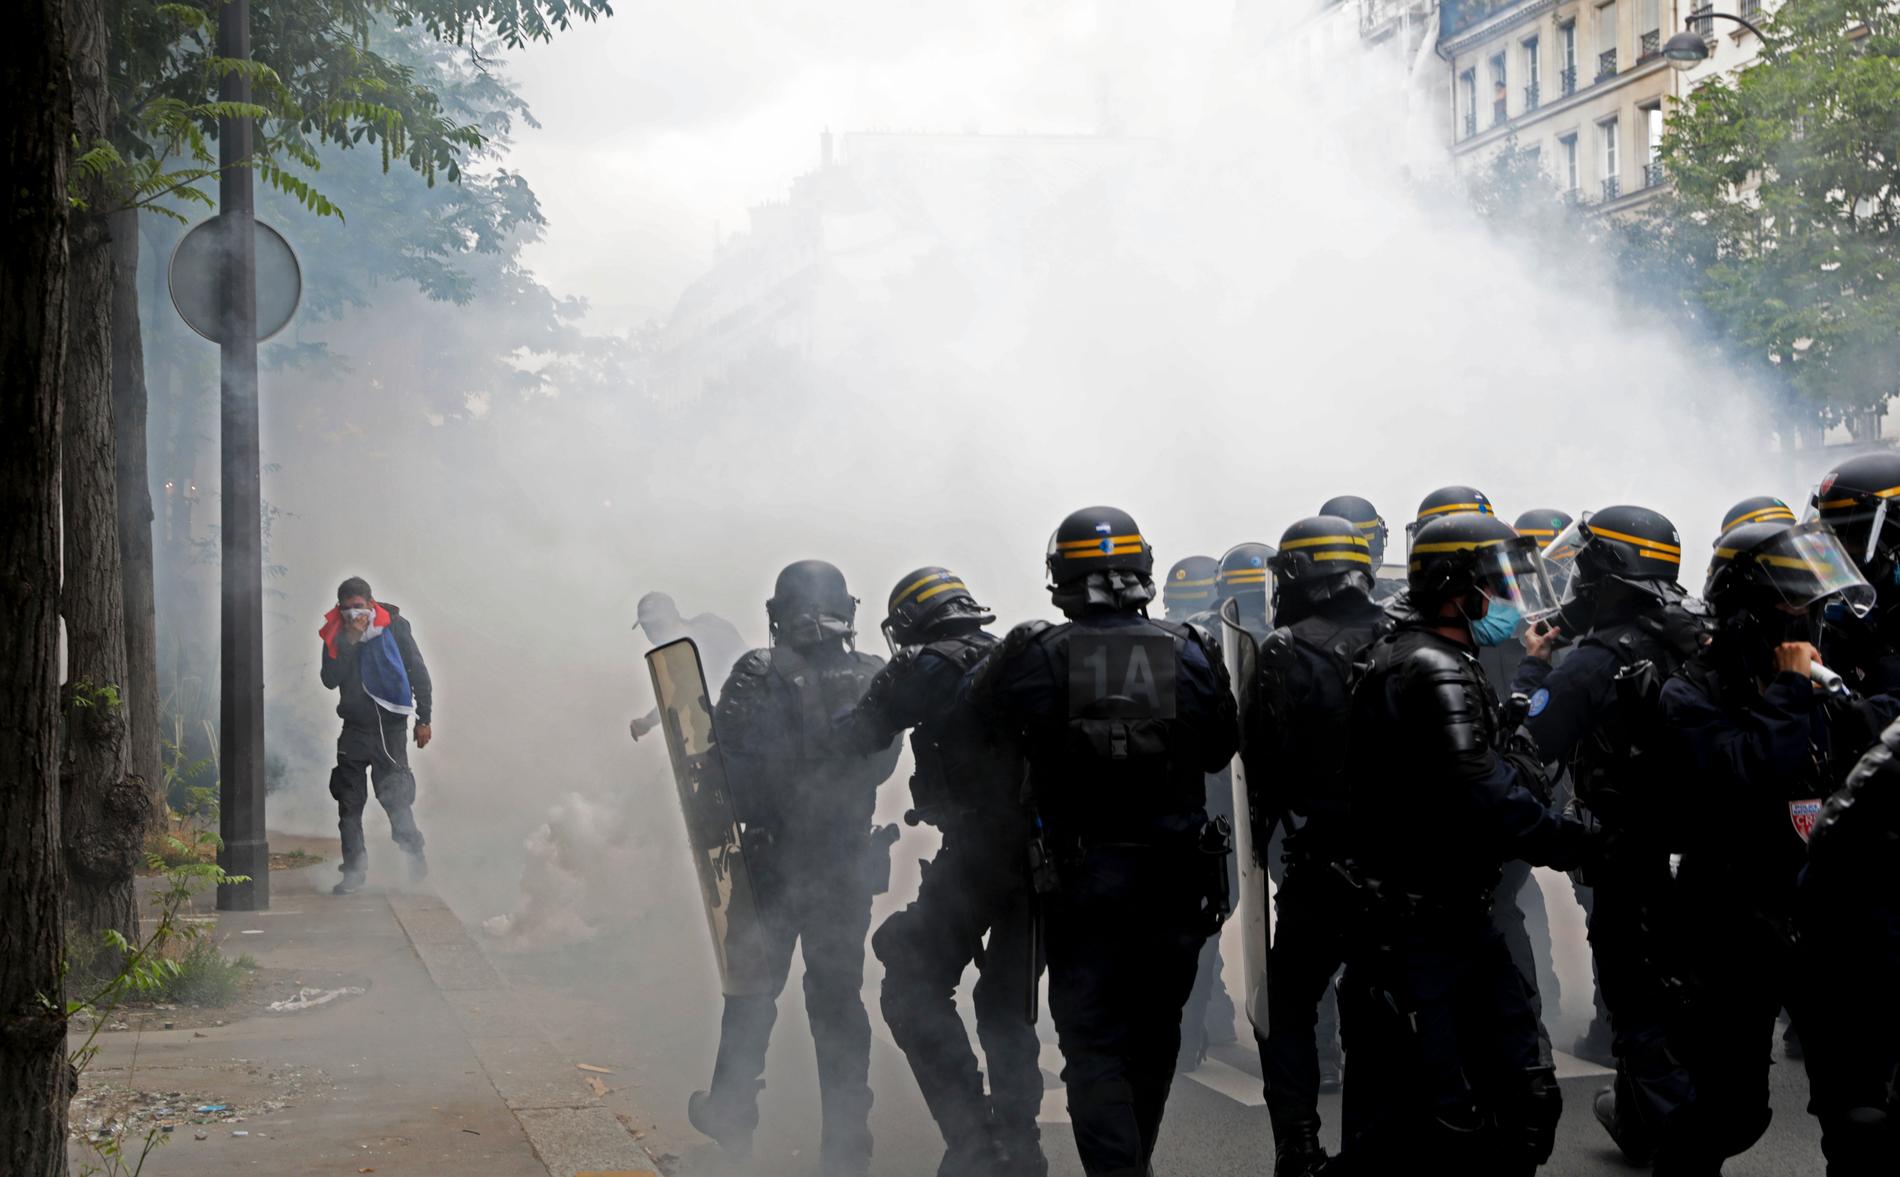 Tårgas sattes in mot demonstranter i Paris på lördagen.